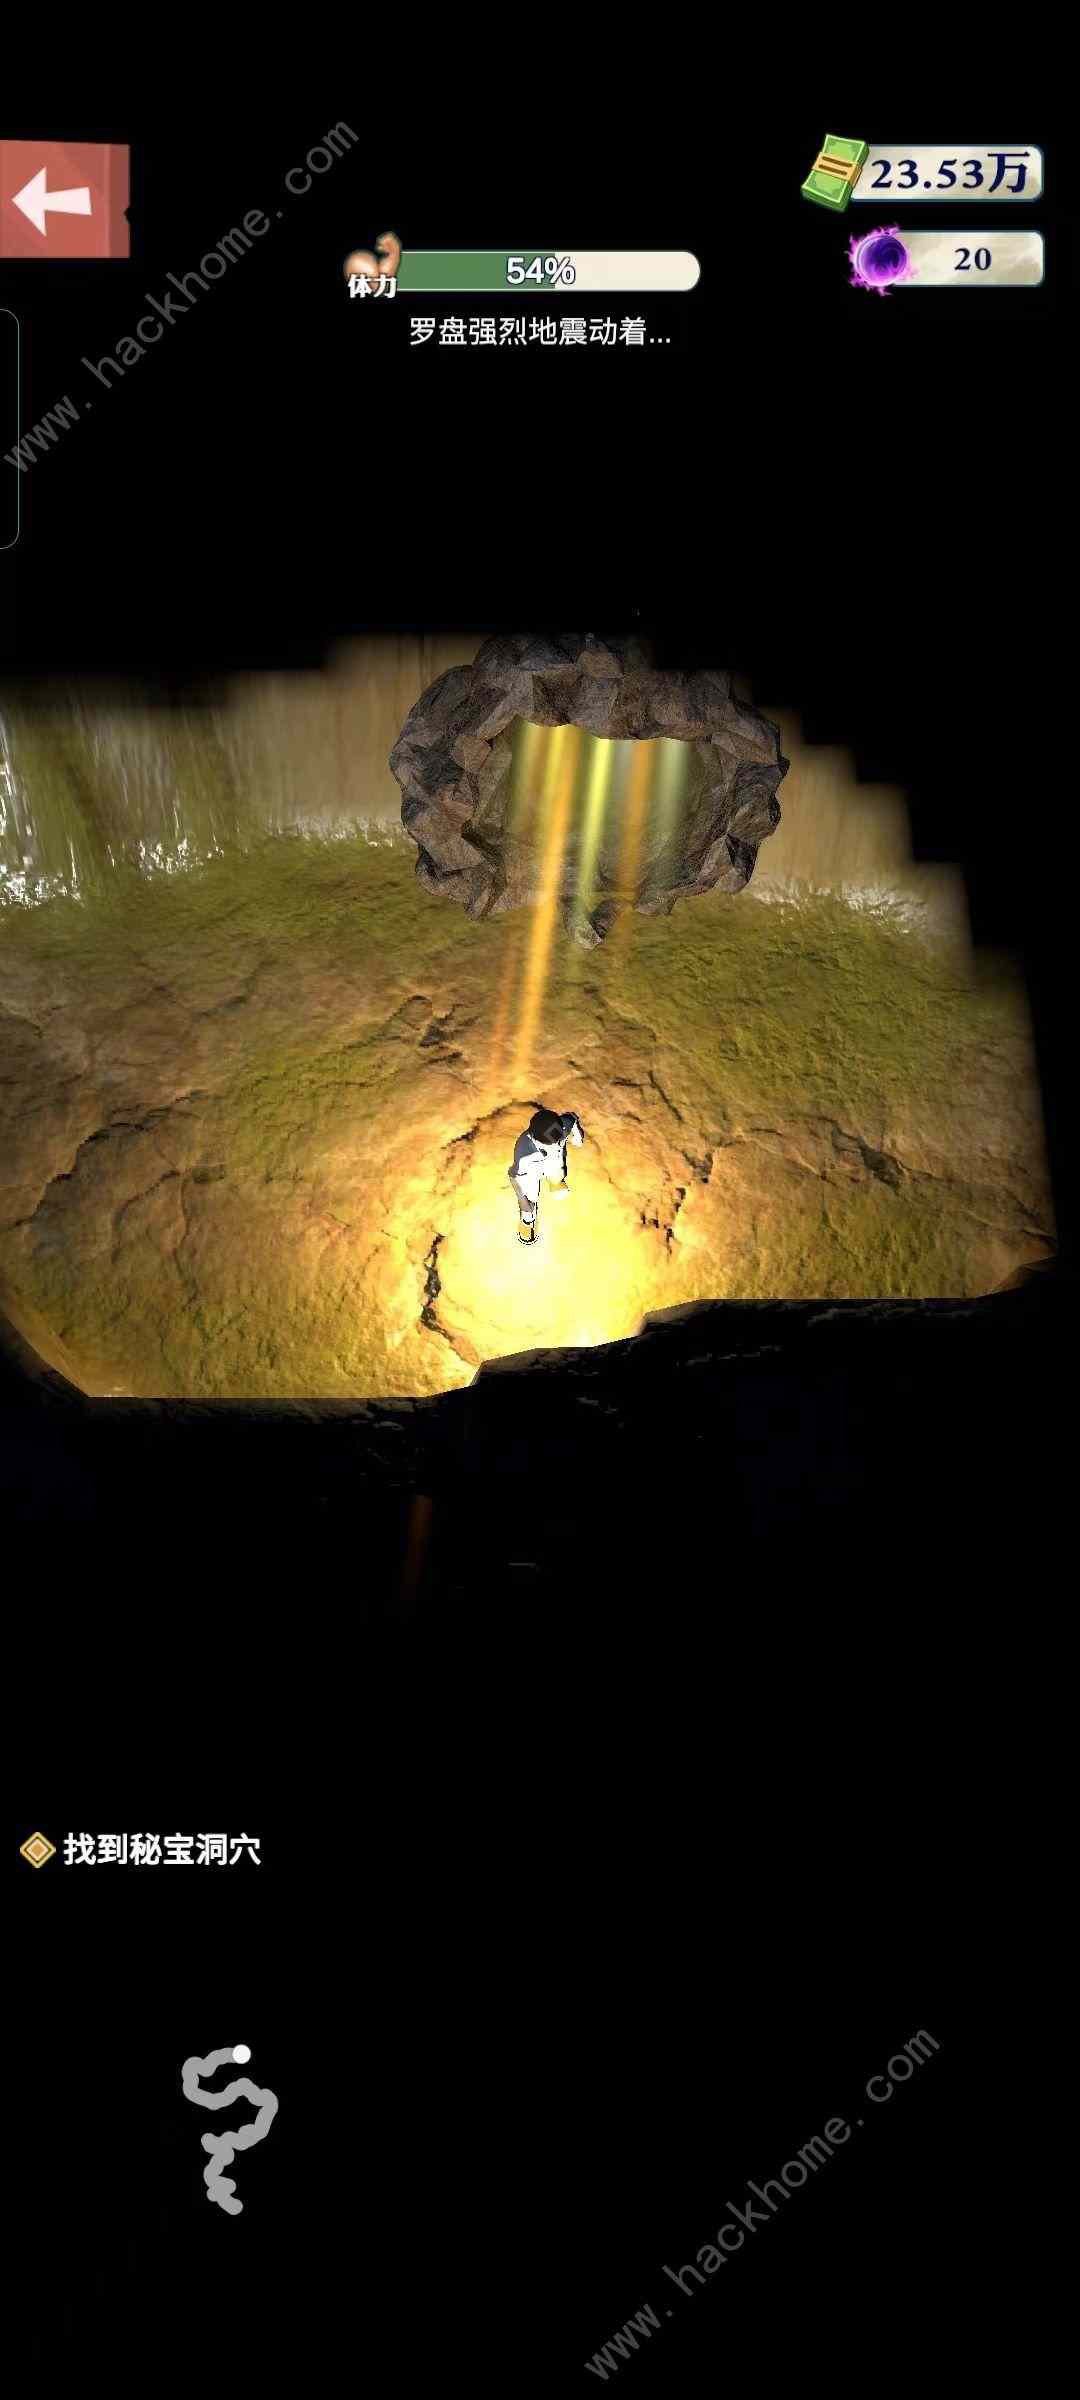 王铲铲的致富之路神秘洞穴是什么 神秘洞穴探索及作用详解[多图]图片2